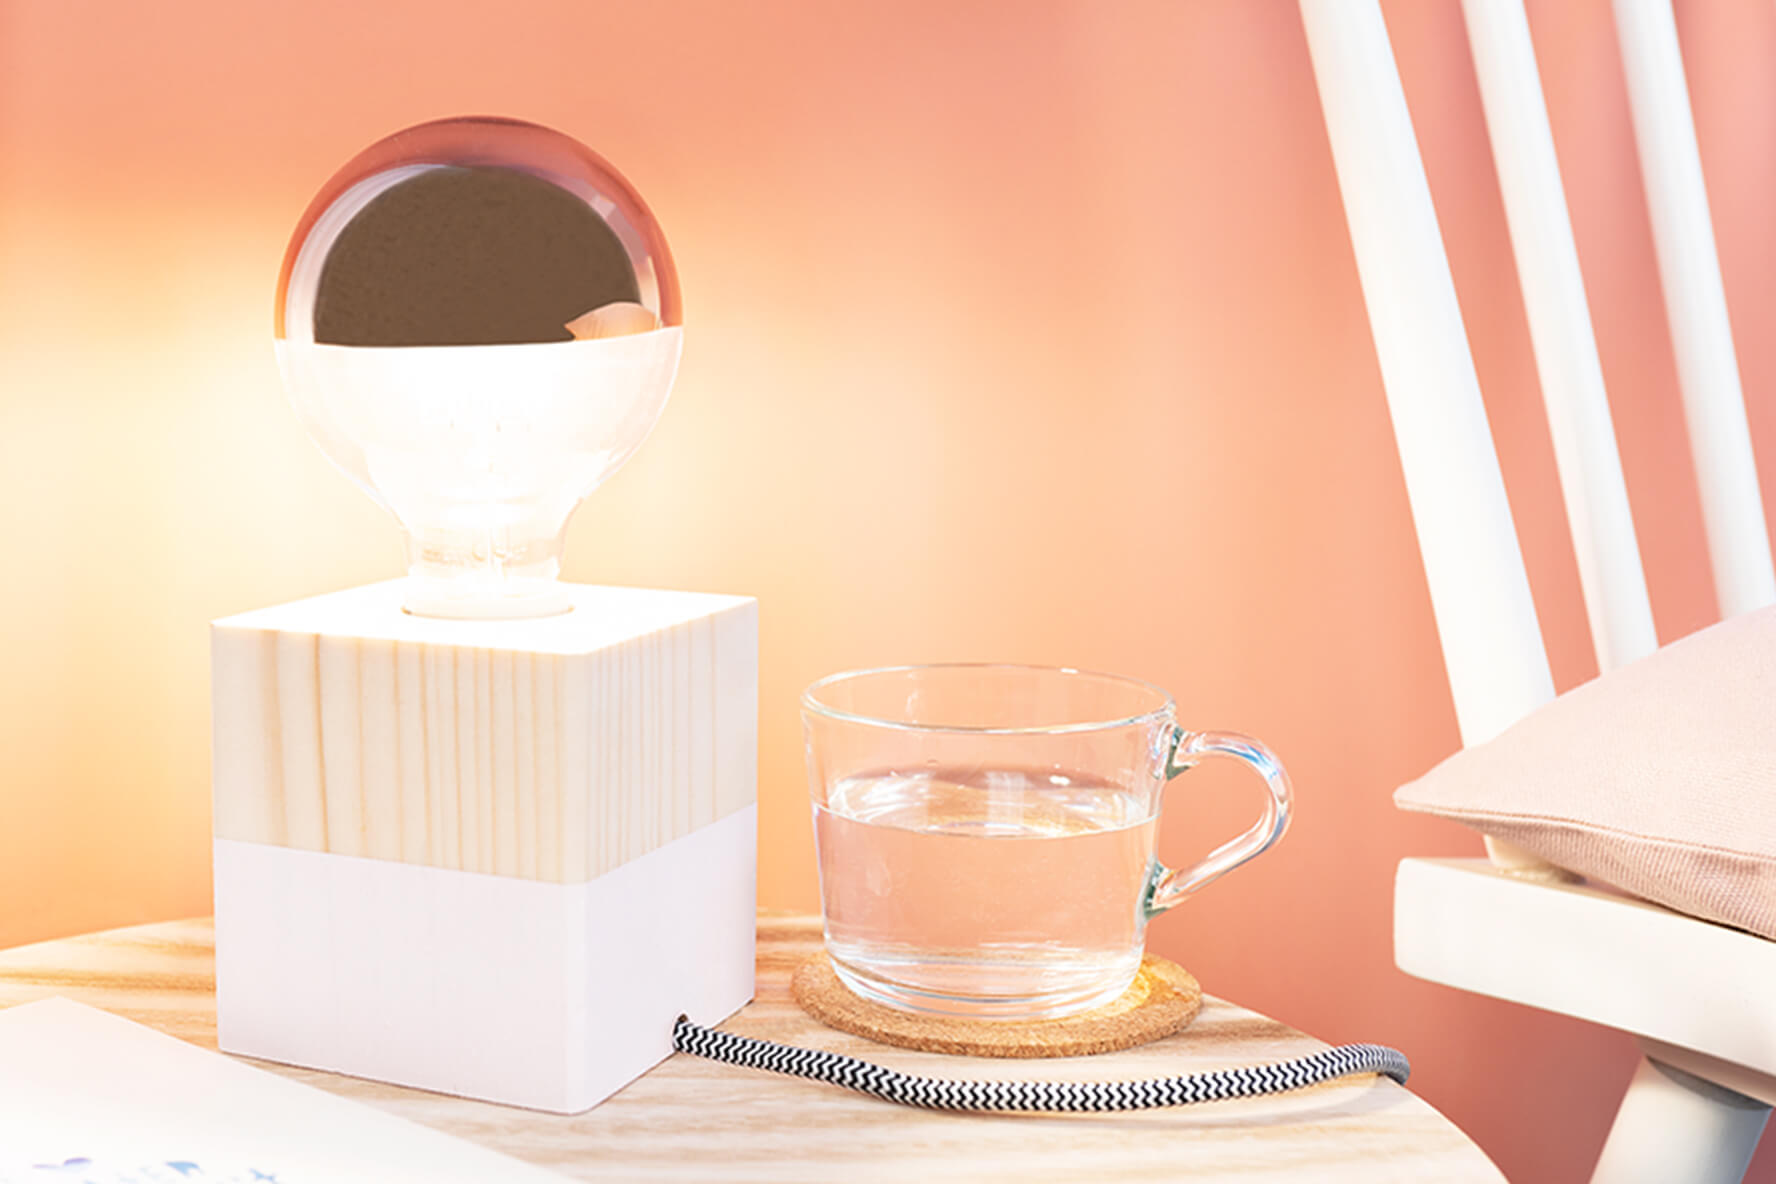 Lampe selber bauen – Ideen und Tipps für zu Hause | OBI